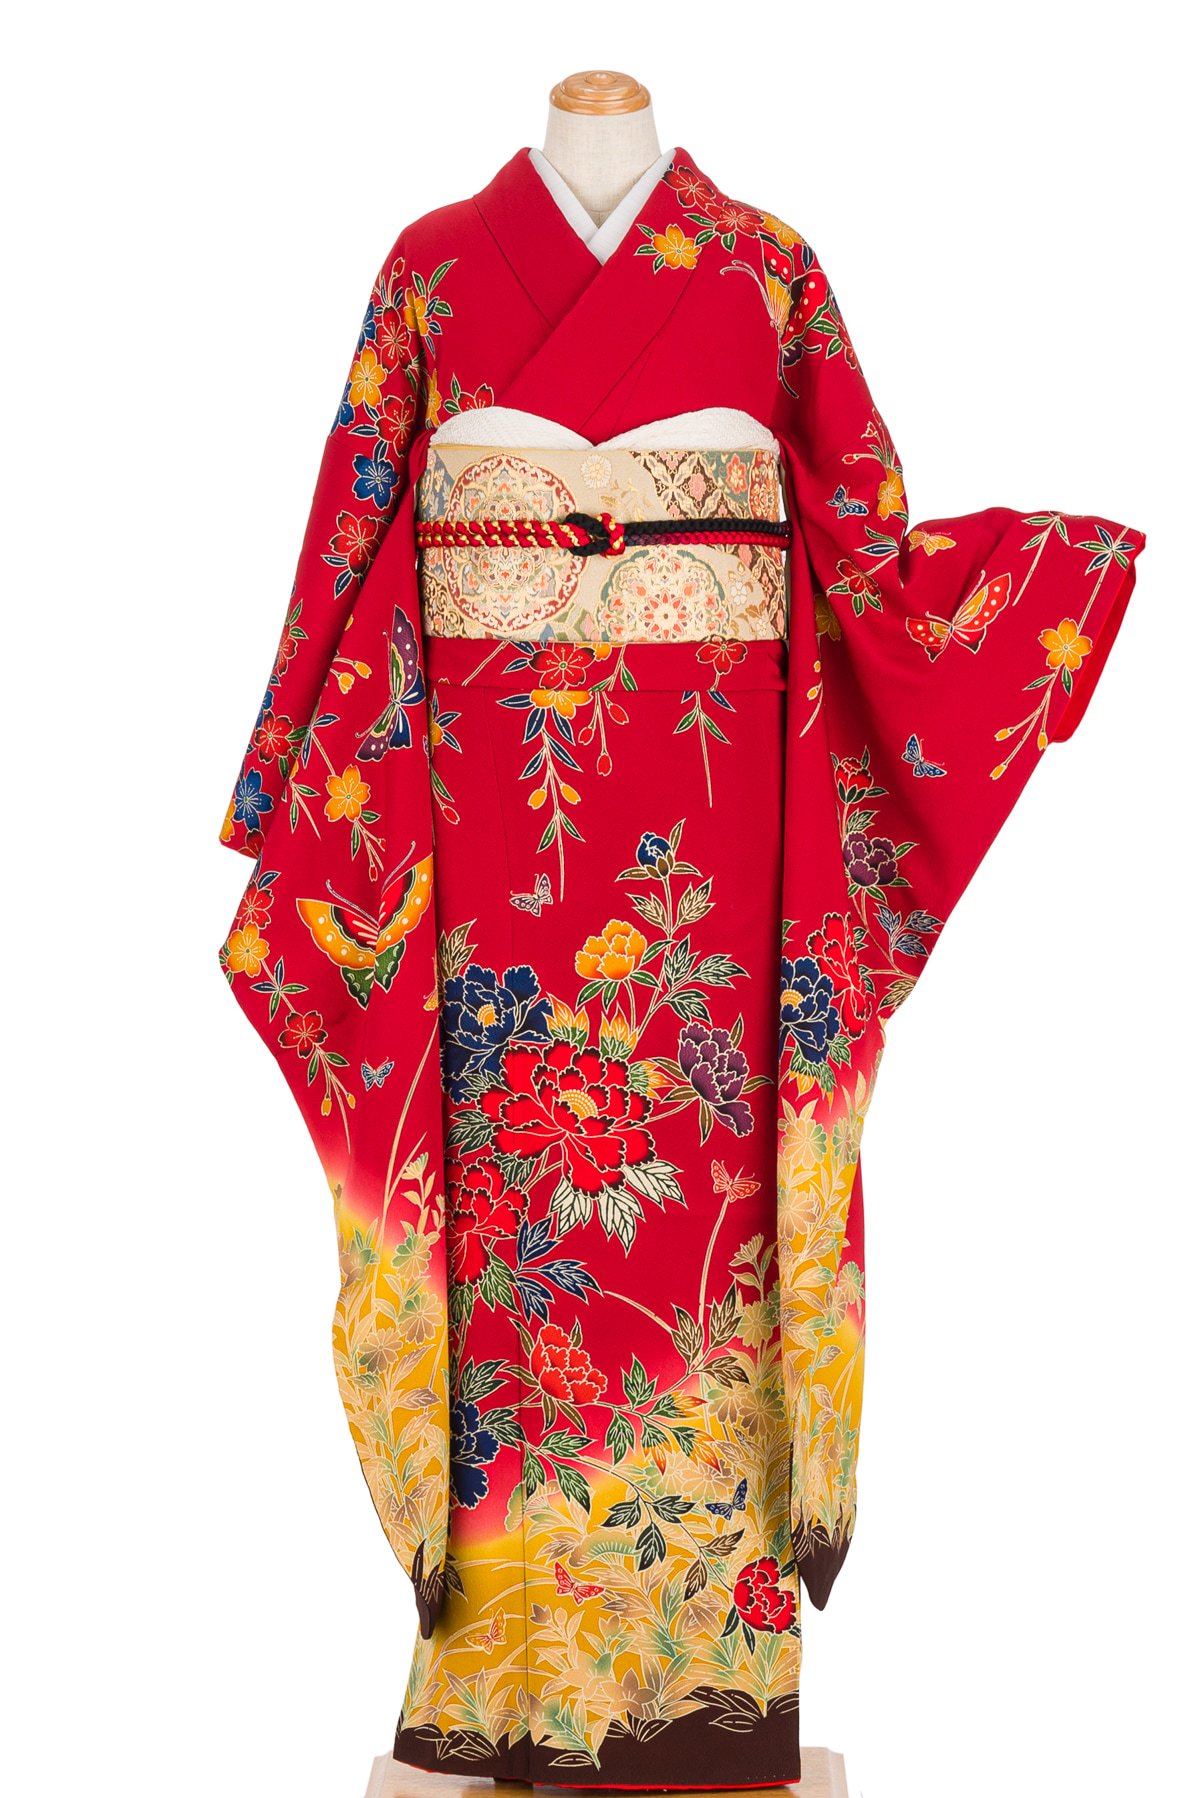 振袖 京紅型 花と蝶々 - からん::アンティーク着物・リサイクル着物の